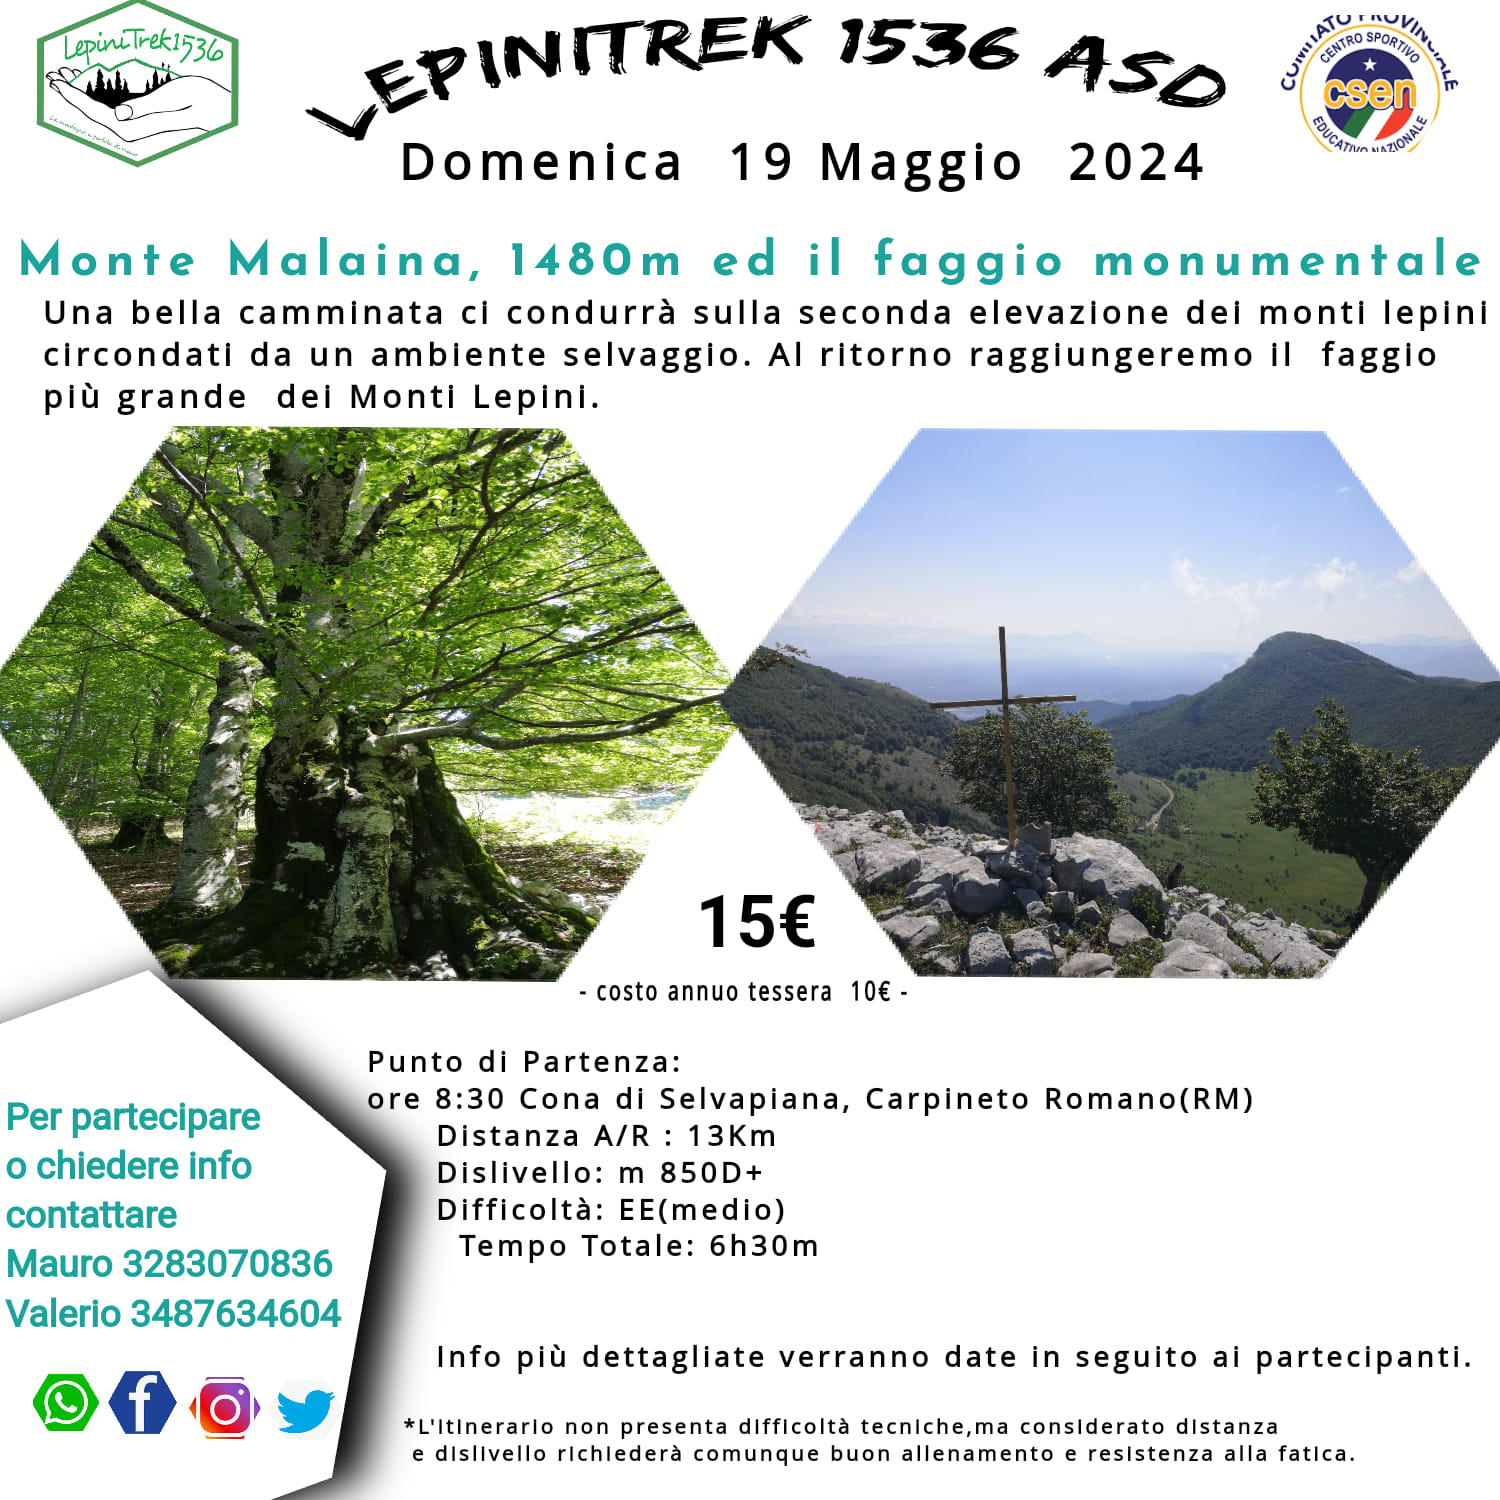 Carpineto Romano: LepiniTrek1536, Monte Malaina @ Comune di Carpineto Romano (RM)